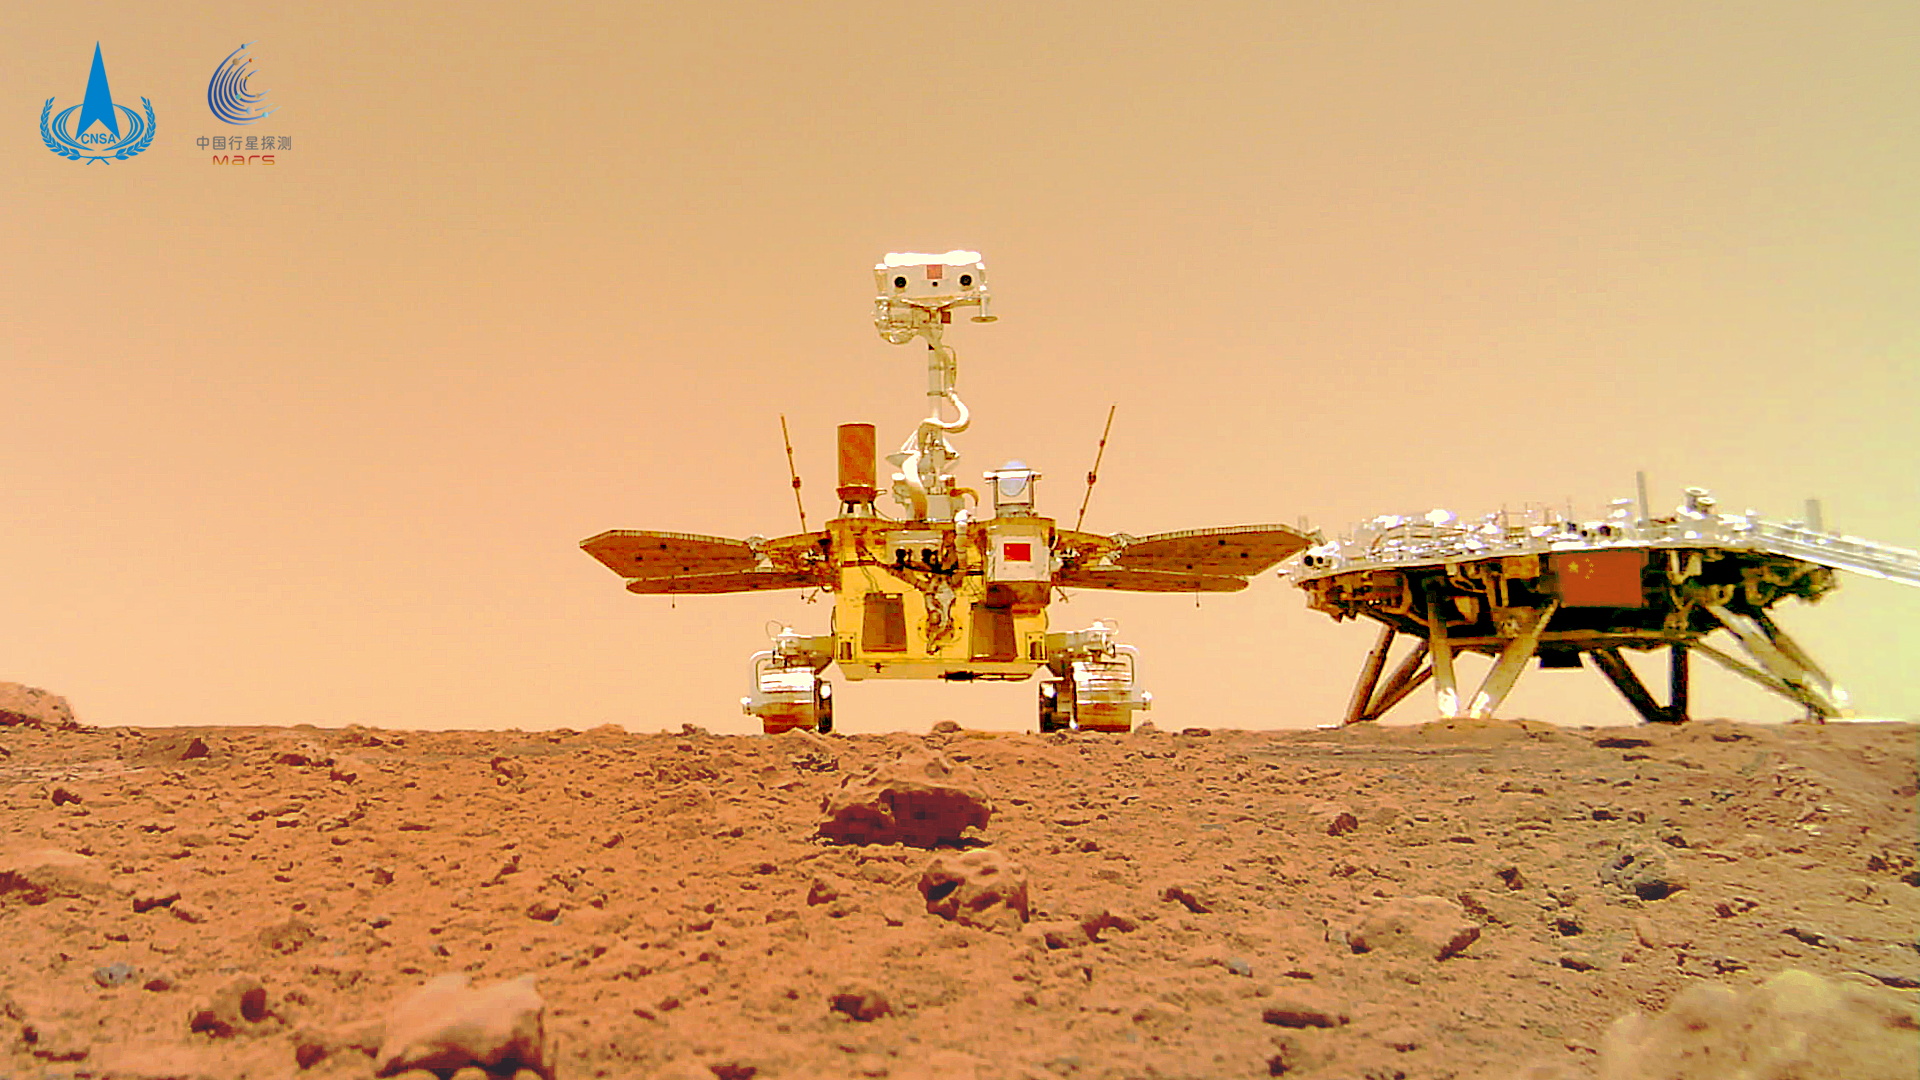 الصين تكسر الصمت حول وضع المركبة الجوالة Zhurong Mars |  أخبار الفضاء